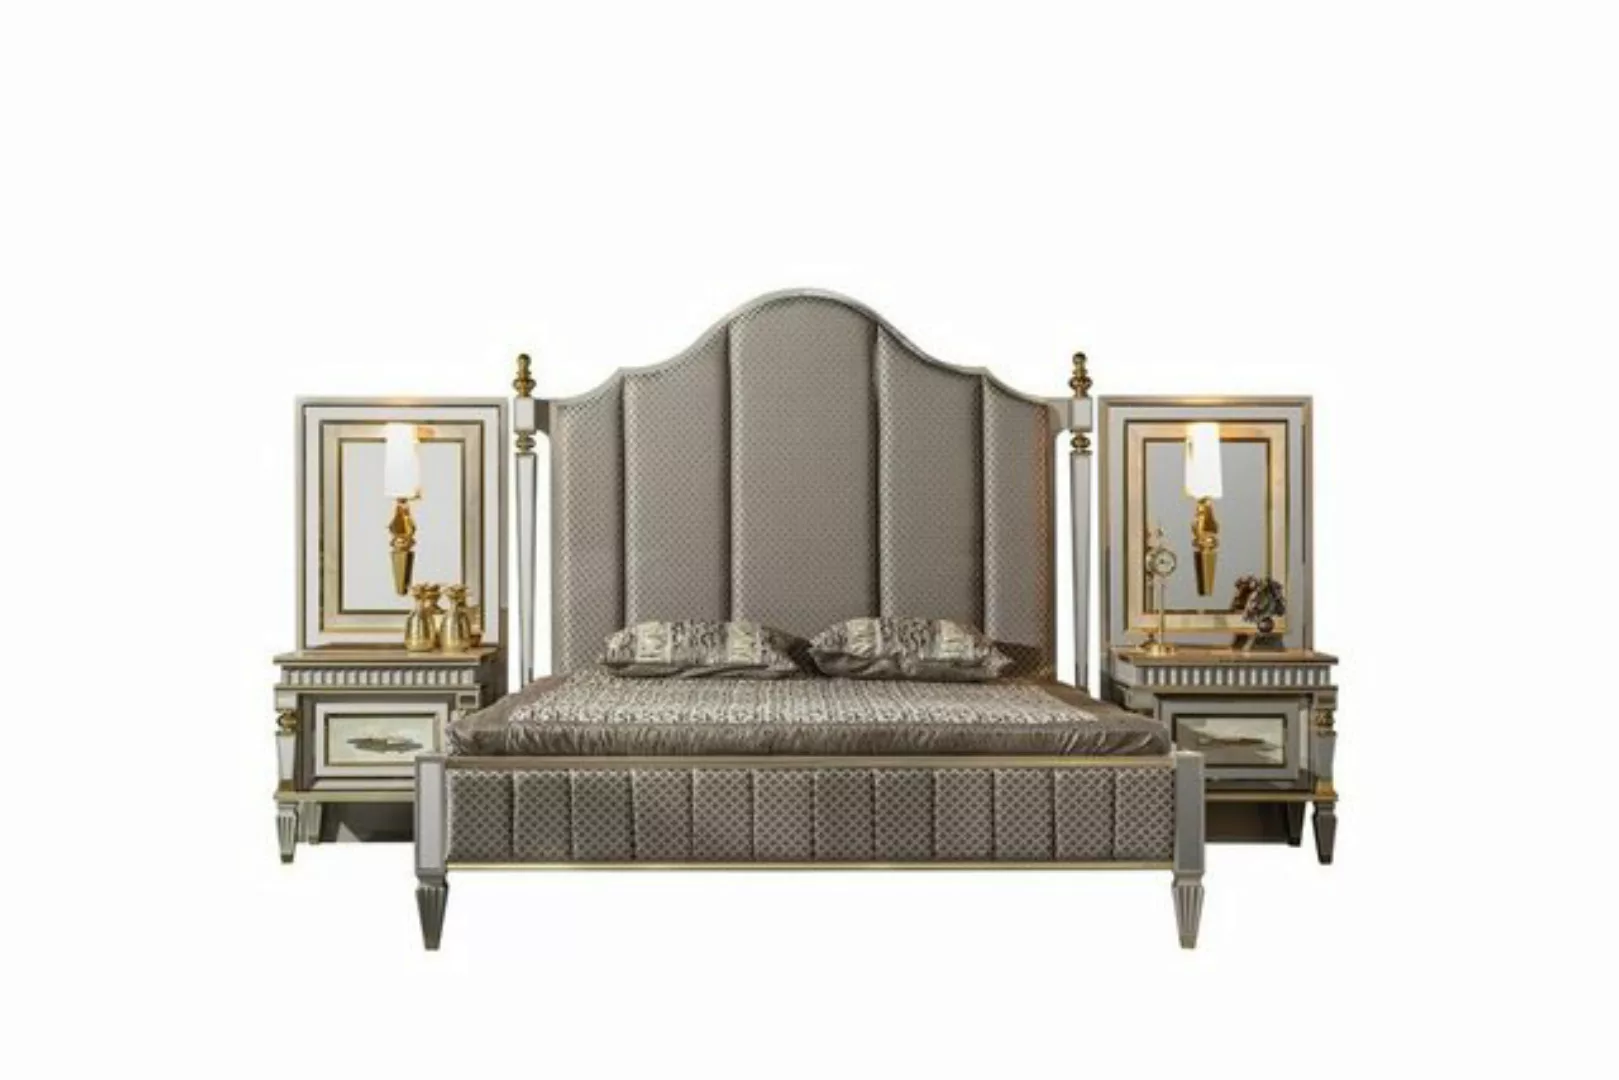 JVmoebel Bett Bett Grau Metall Möbel Elegantes Design Schlafzimmer Luxus Be günstig online kaufen